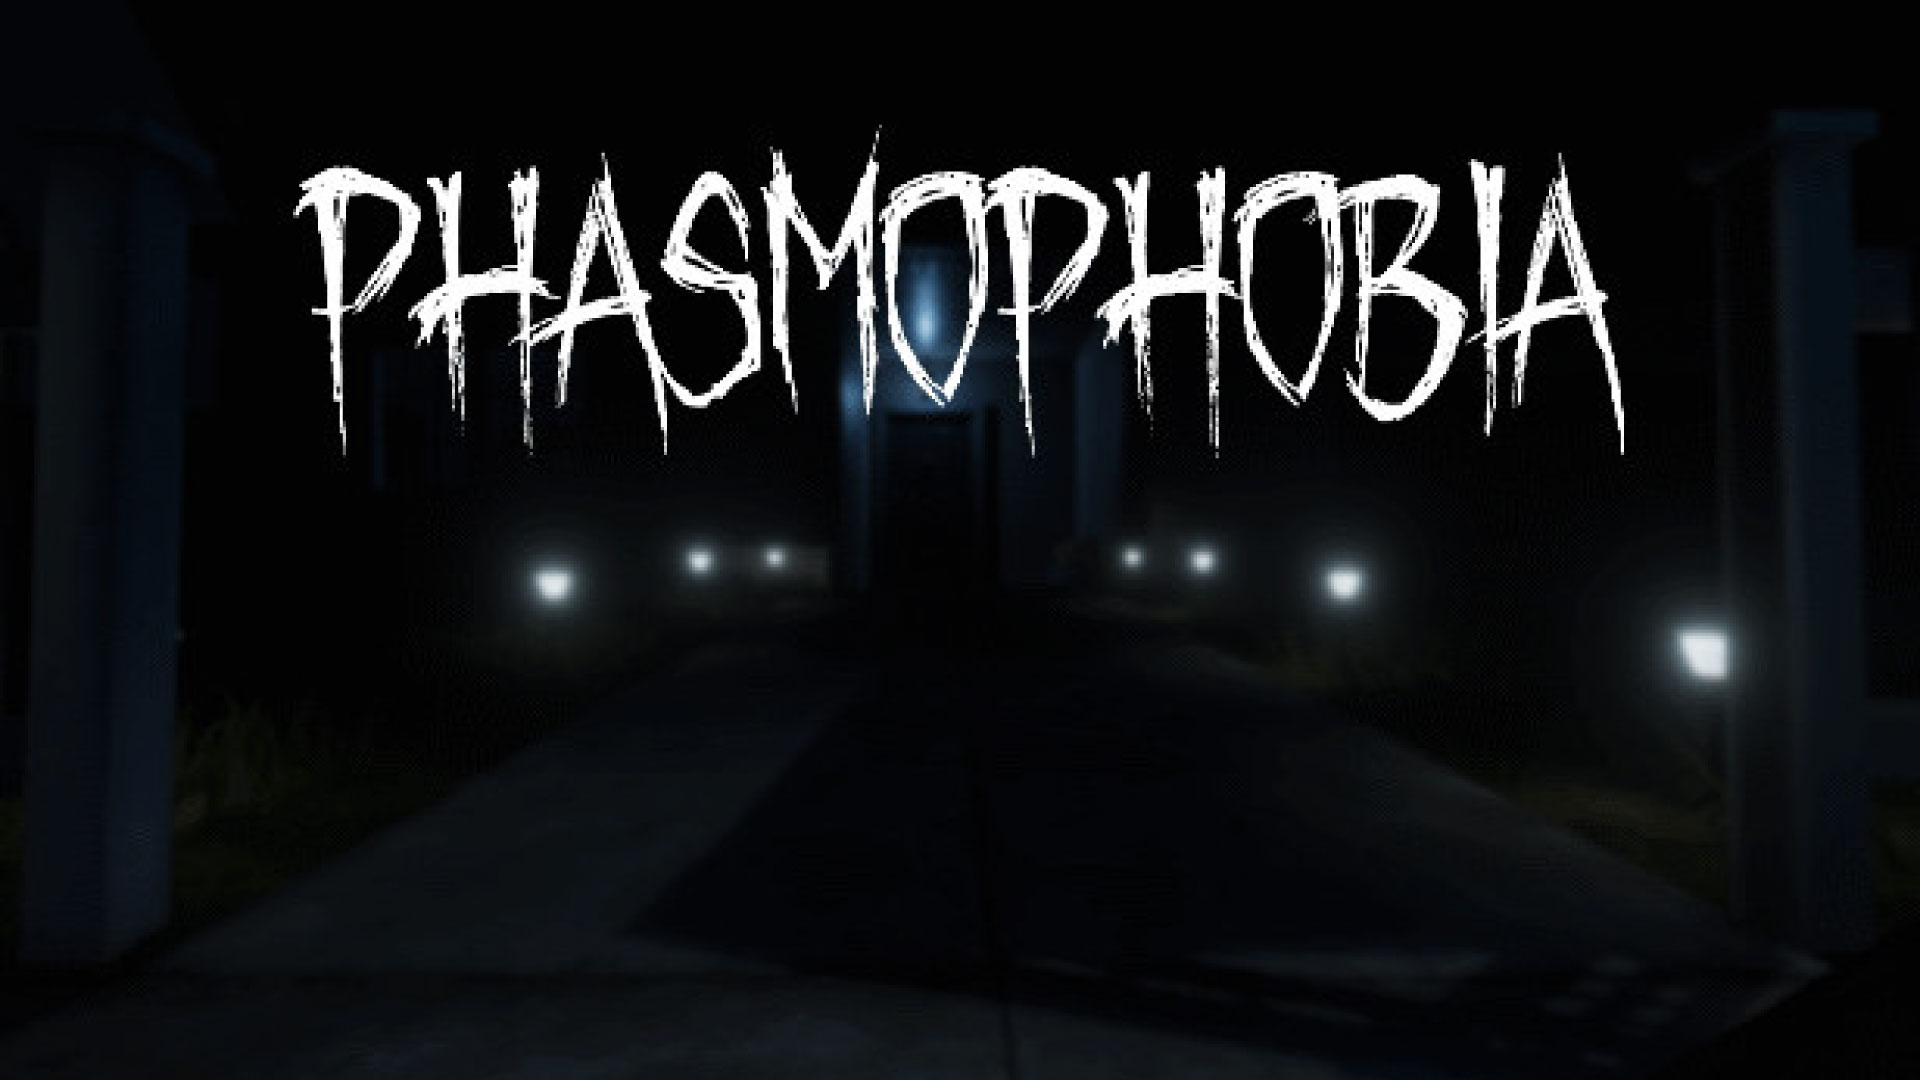 در Phasmophobia چند نوع روح وجود دارد و نقاط ضعفشان چیست؟